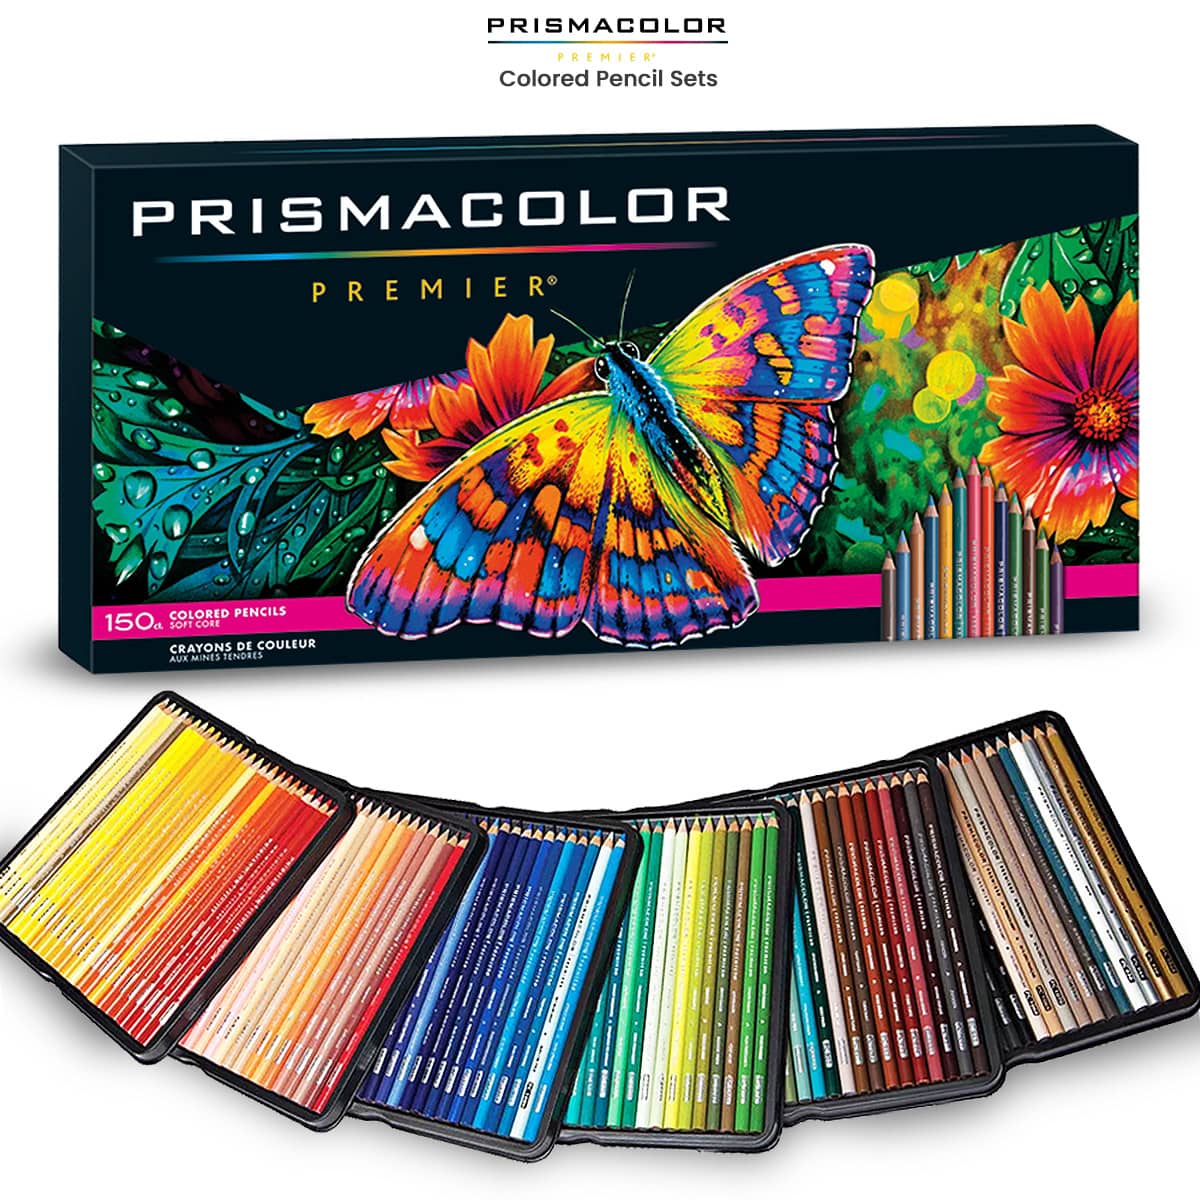 Premier Colored Pencil Sets